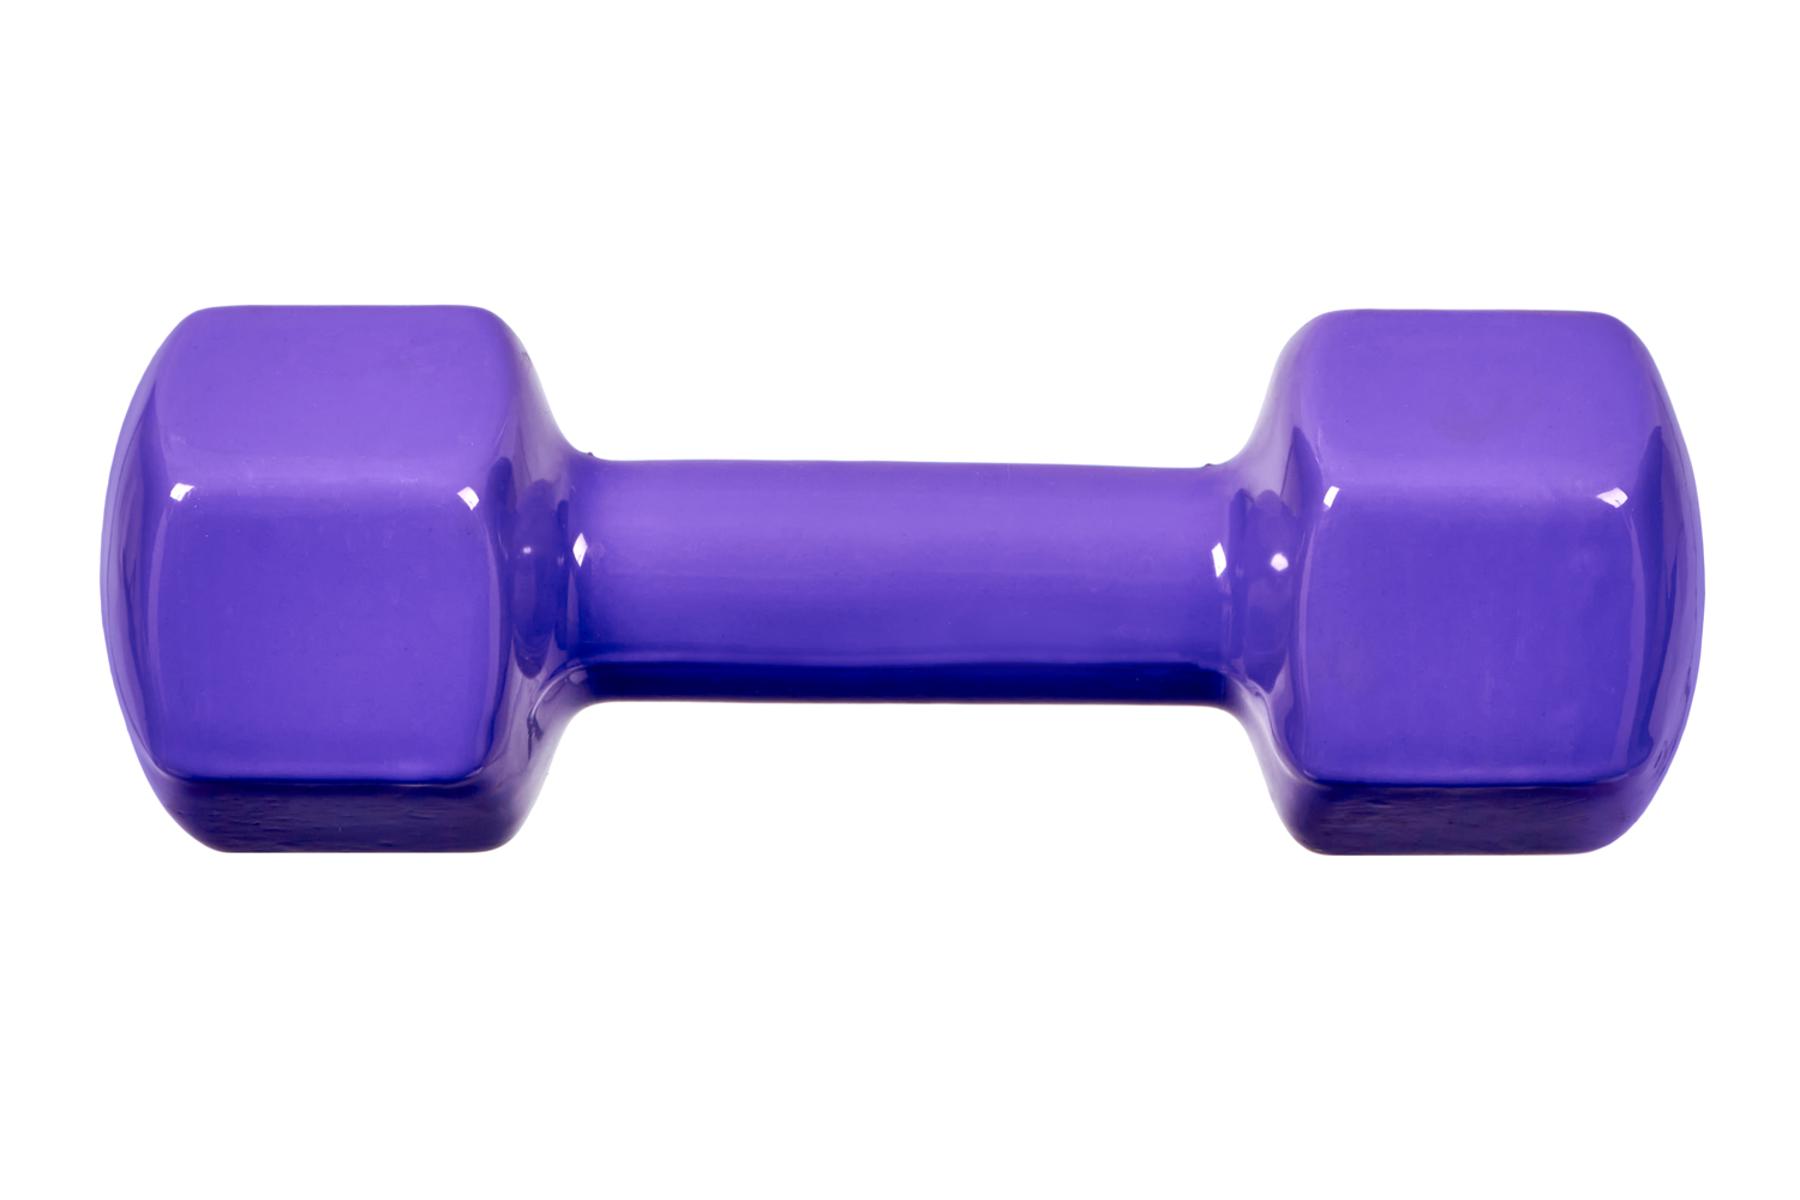 Гантель обрезиненная 4кг Bradex SF 0537 фиолетовый 1800_1200